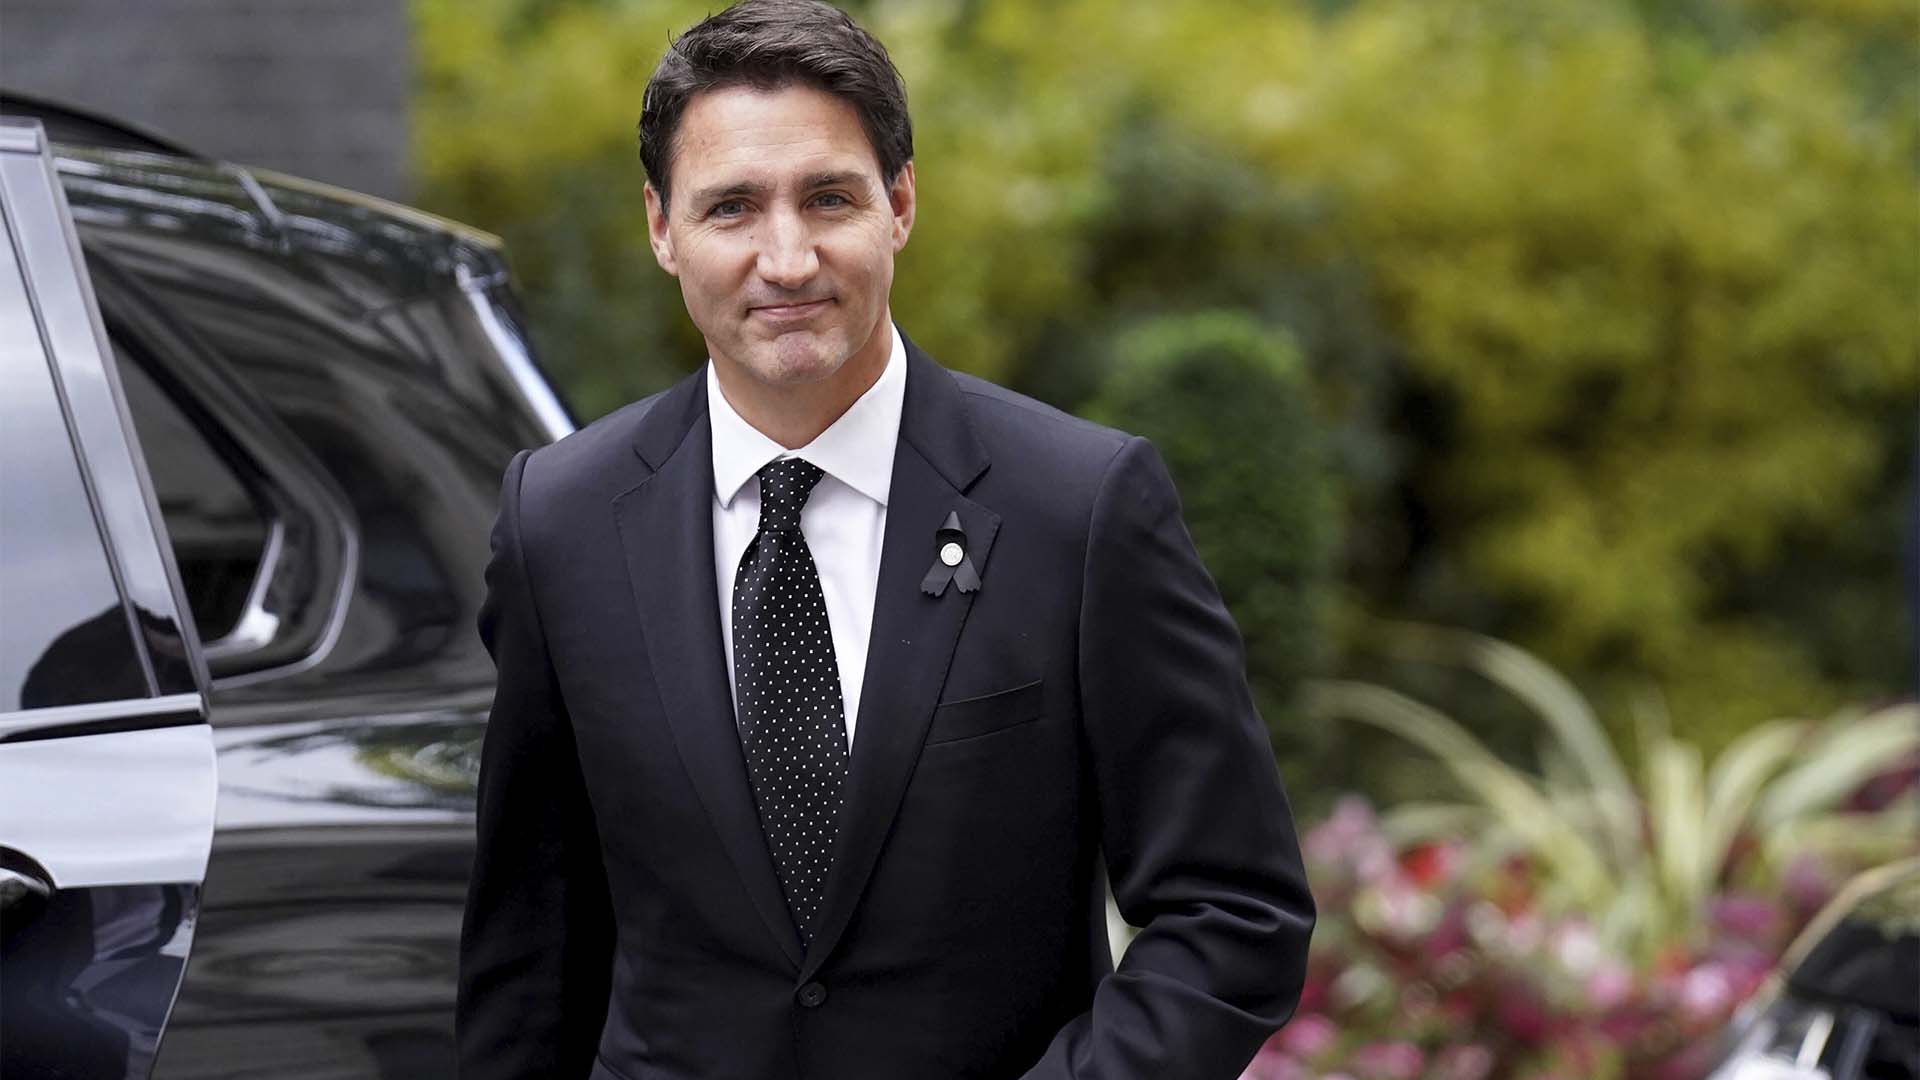 Le Premier ministre du Canada Justin Trudeau arrive au 10 Downing Street pour une réunion avec la première ministre britannique Liz Truss, à Londres, le dimanche 18 septembre 2022. (Stefan Rousseau/PA via AP)